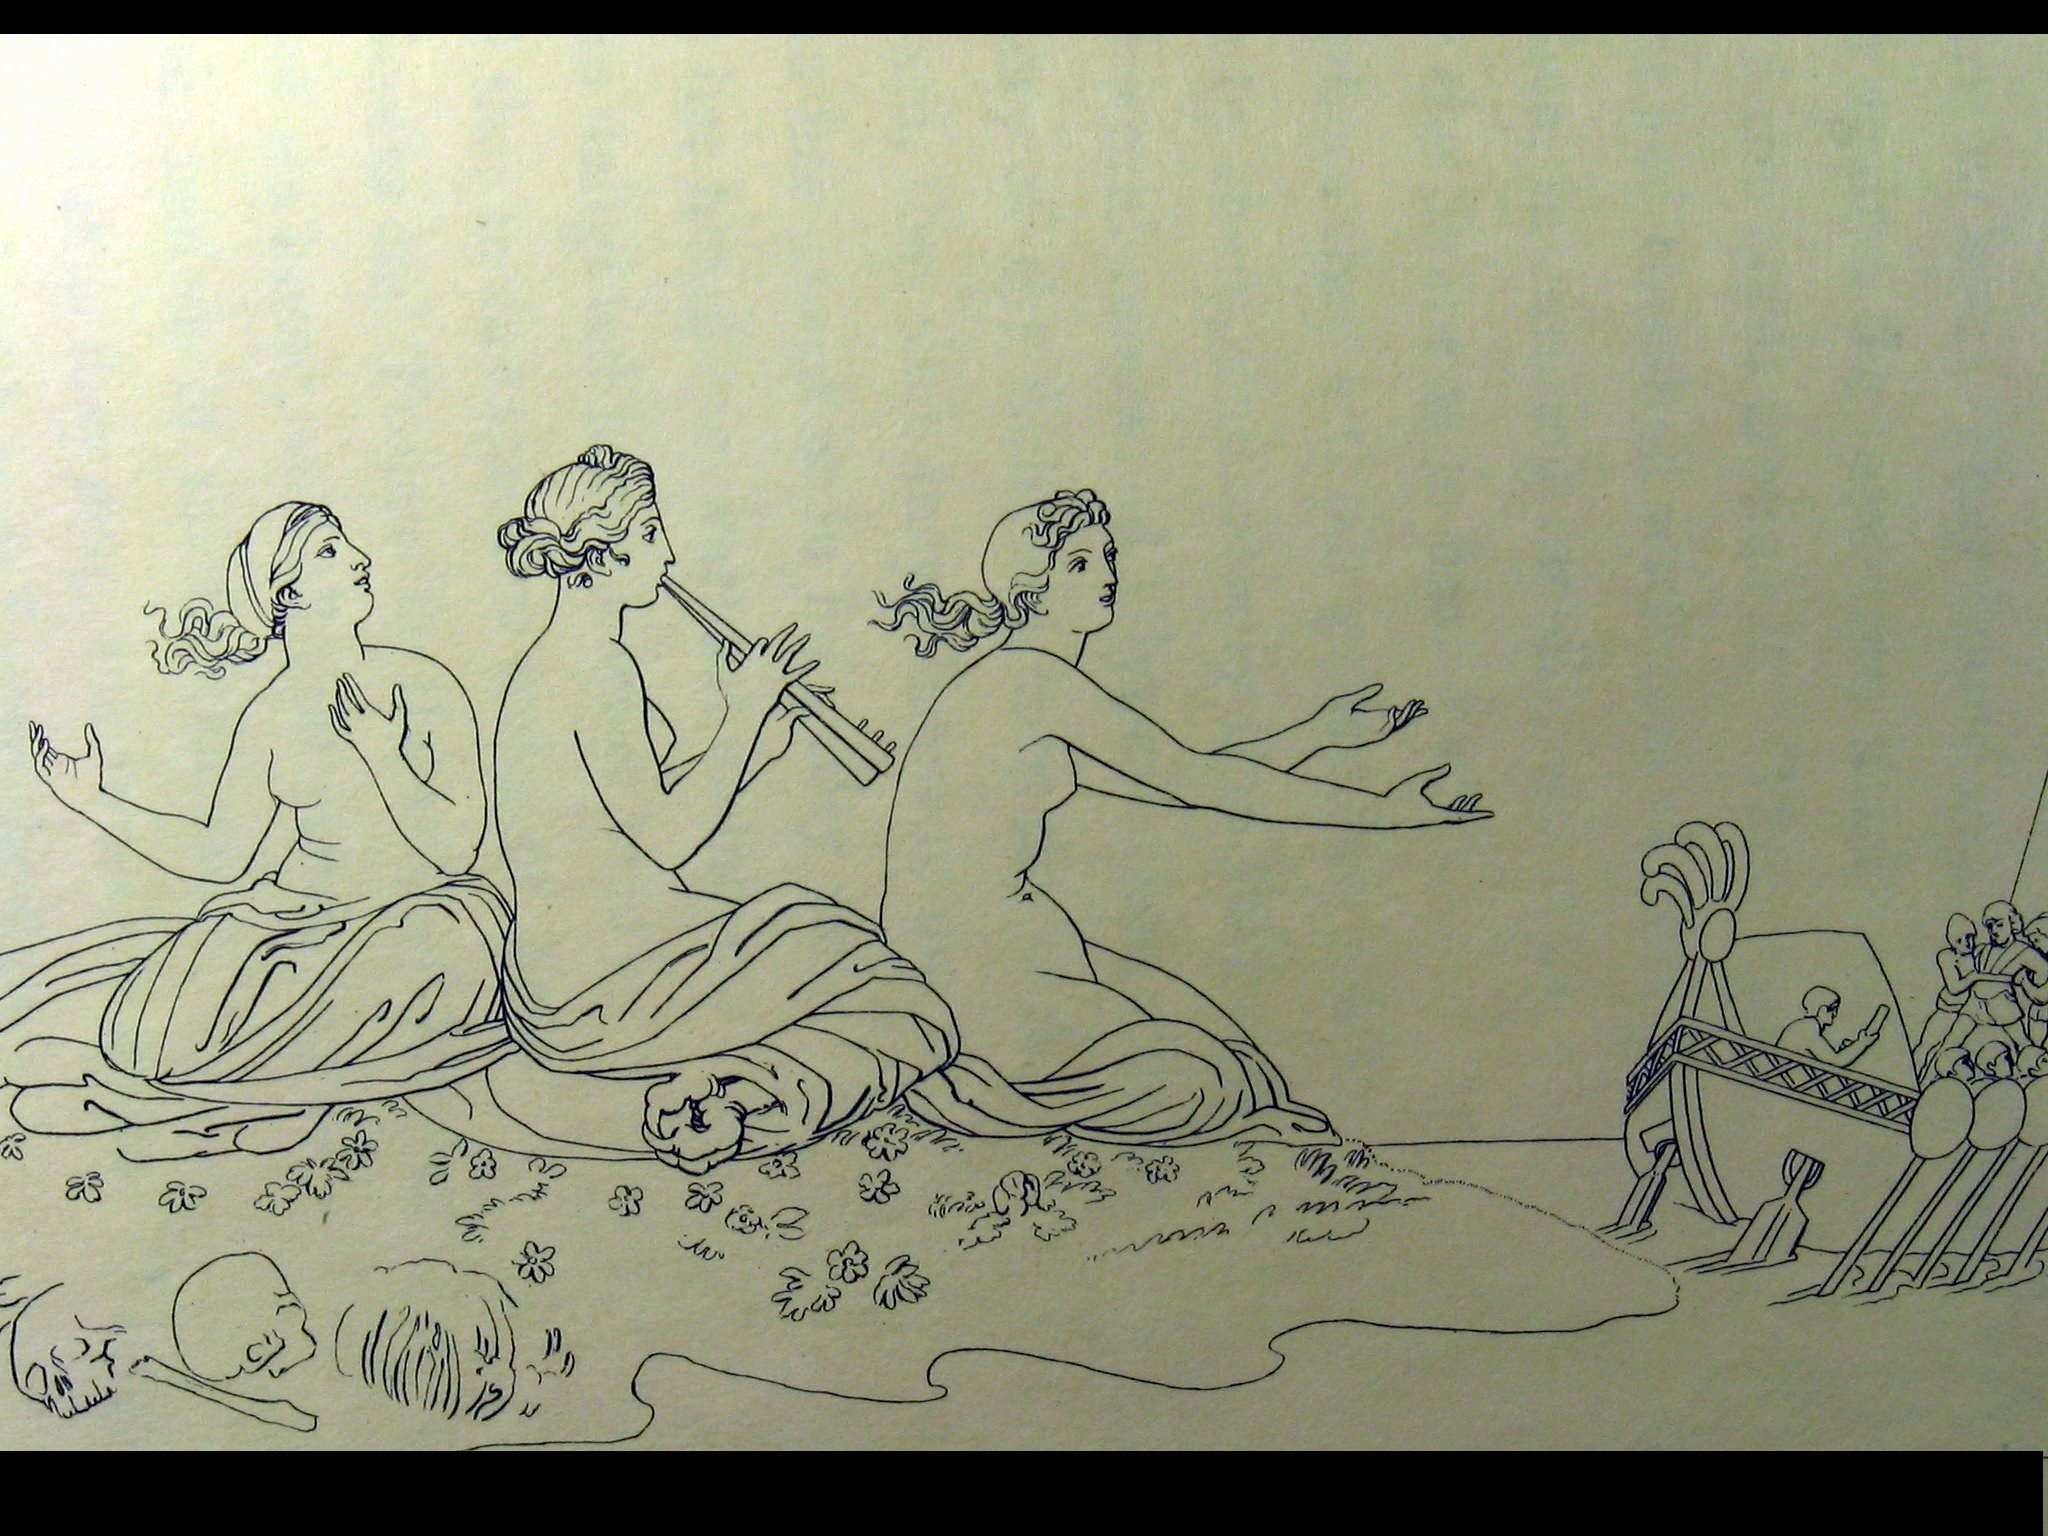 Сюжет поэмы гомера. Джон Флаксман иллюстрации к Одиссея. Иллюстрация к поэме Гомера Одиссея. Флаксман Илиада. Джон Флаксман (1755-1826).